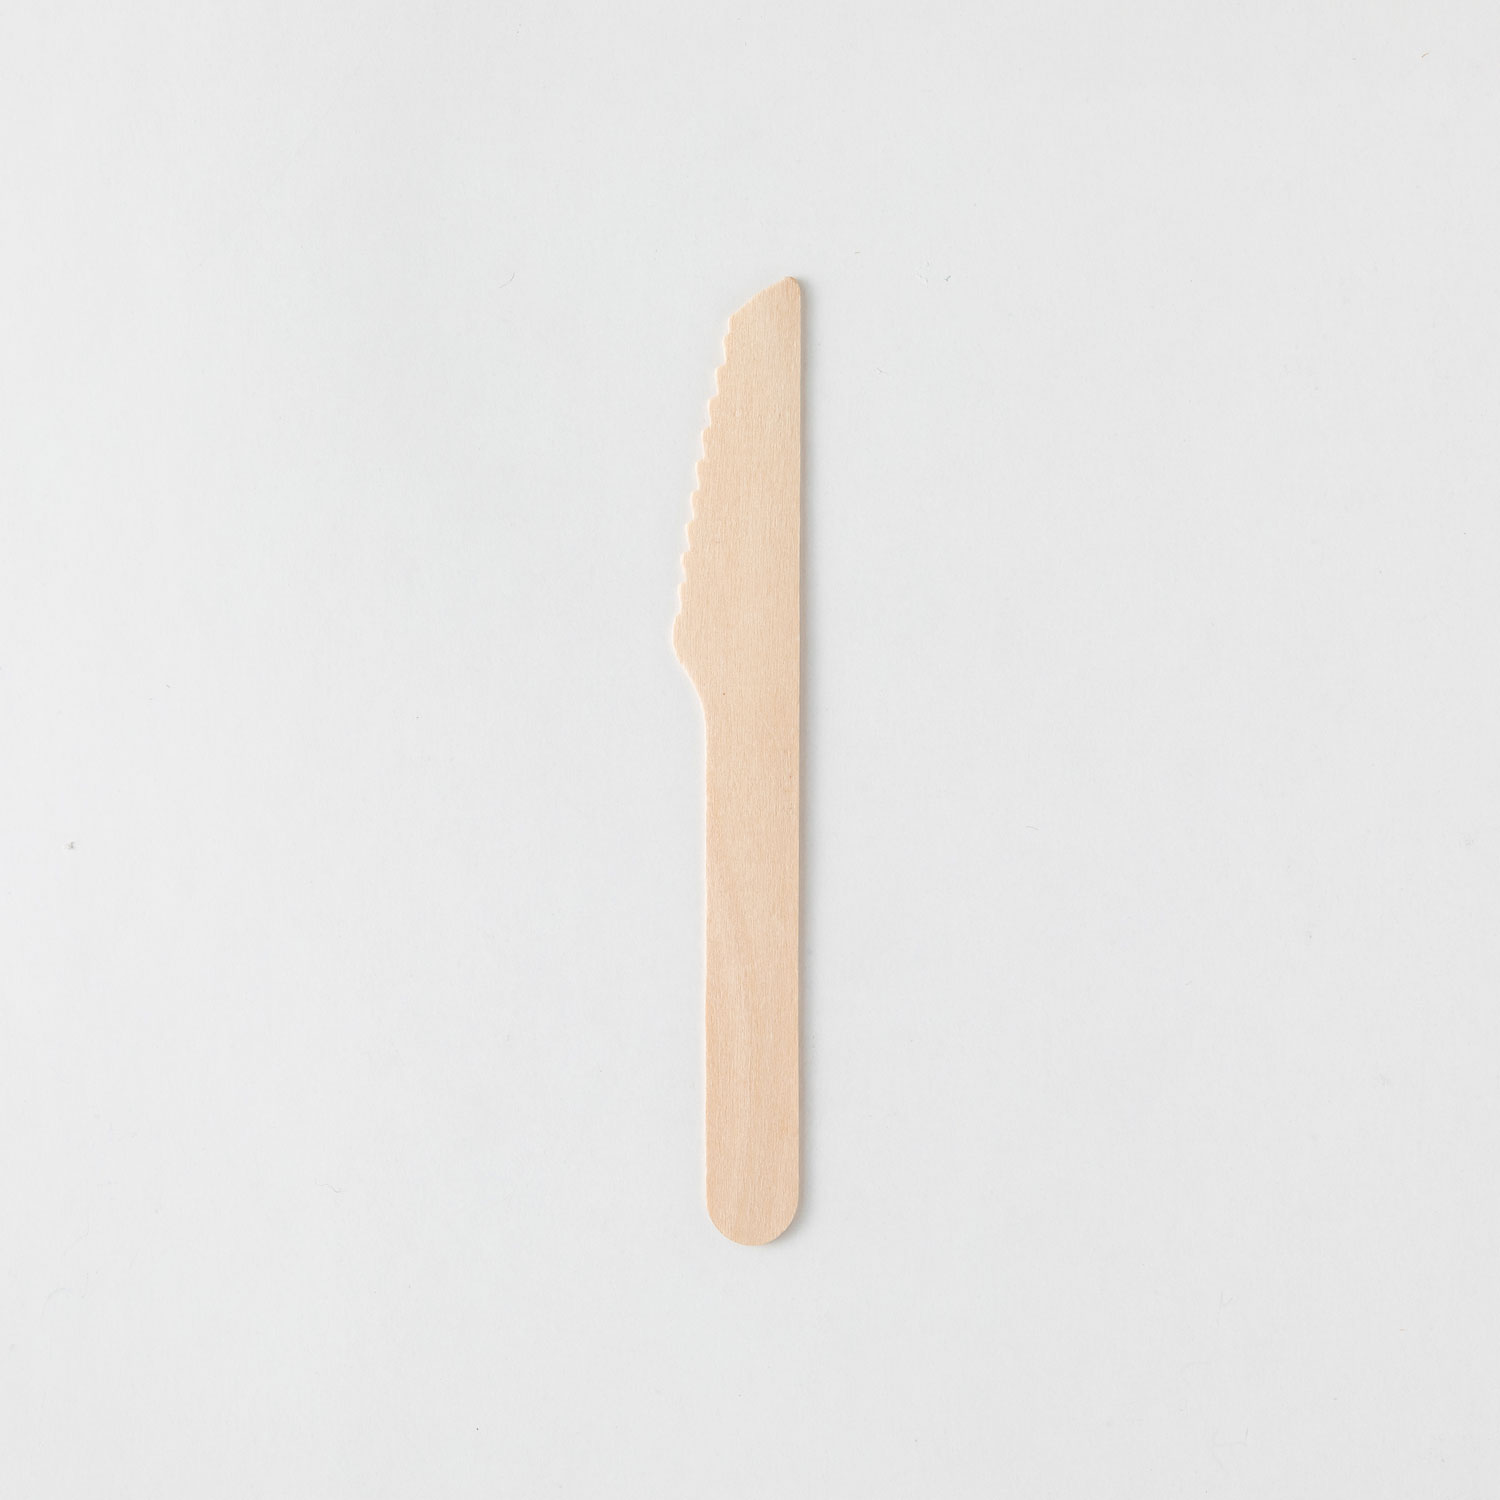 使い捨てカトラリー 木製ナイフ140 紙完封(茶色) アサヒグリーン